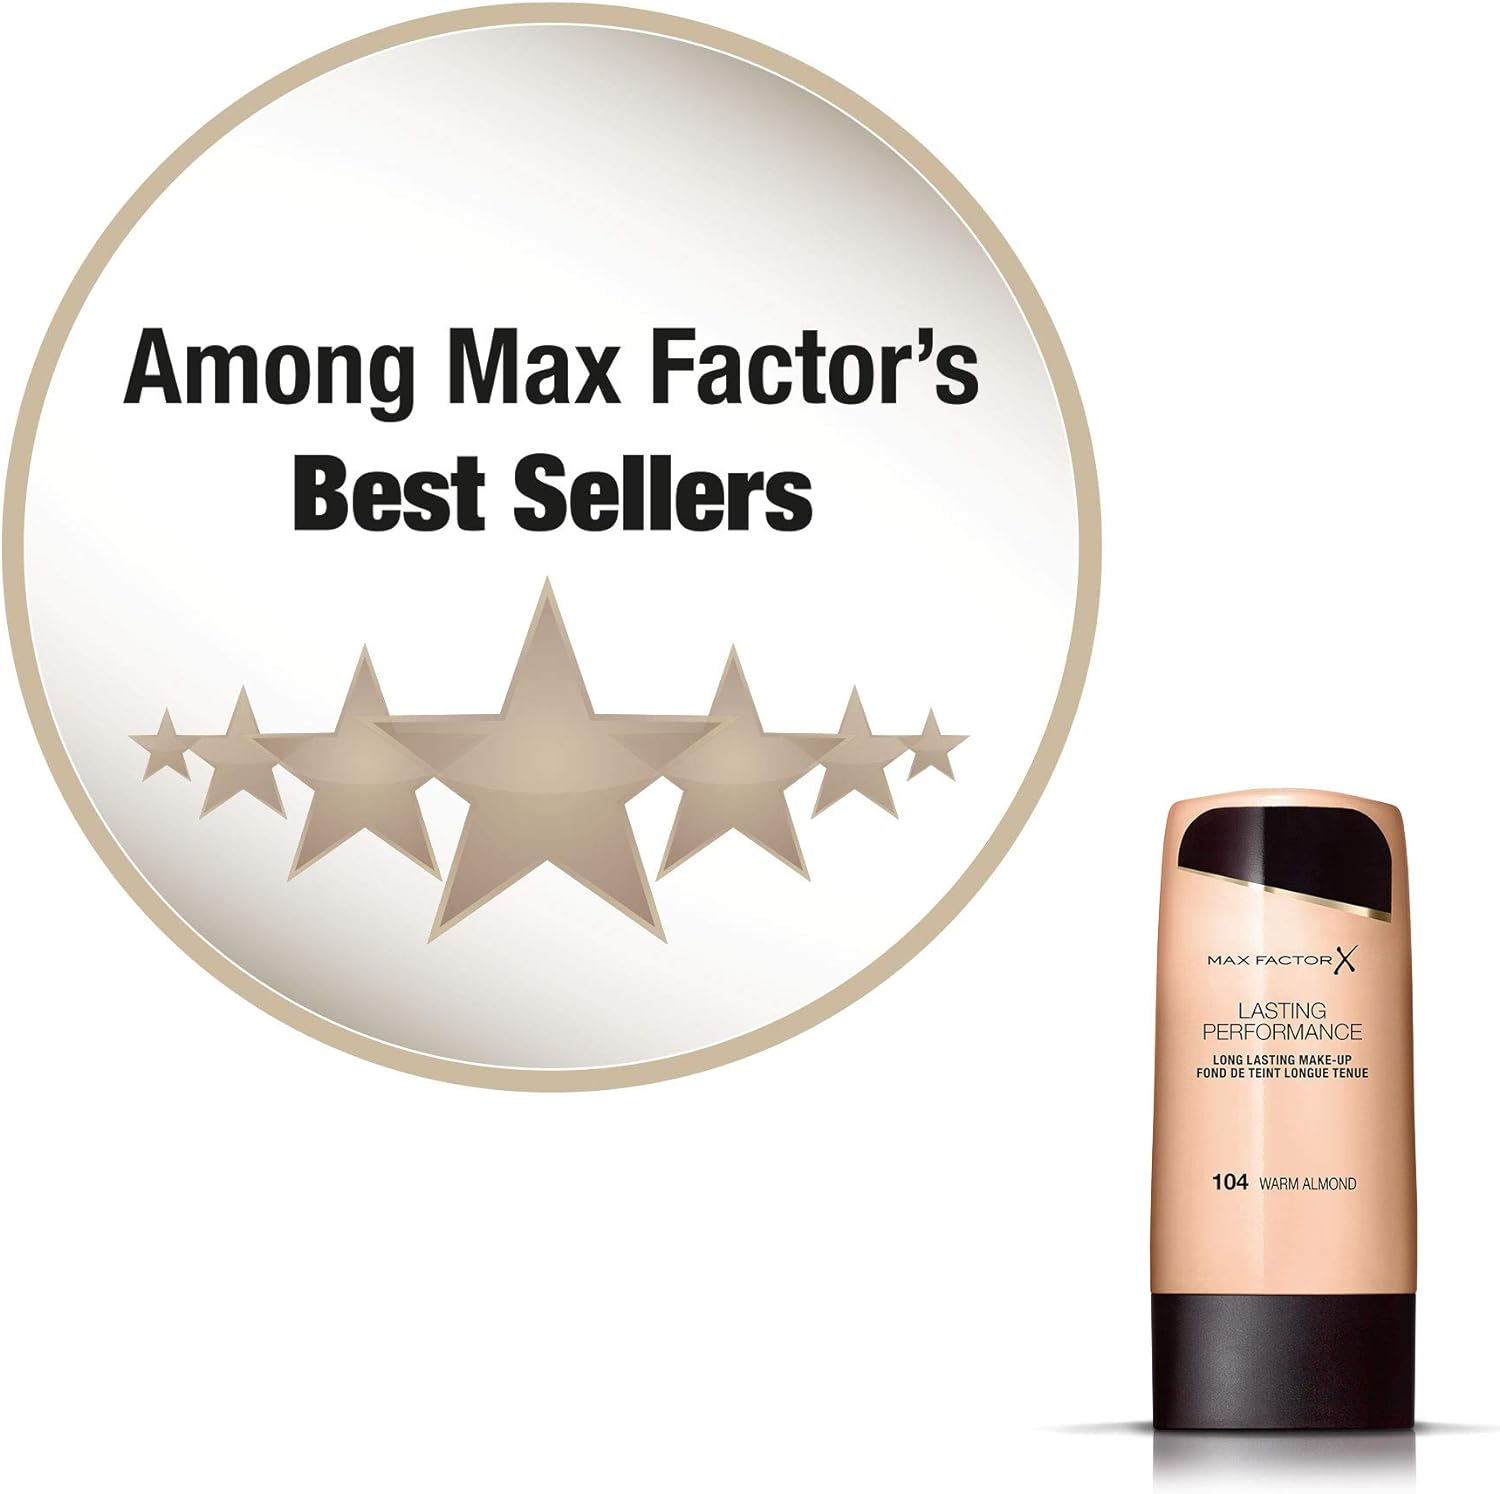 Max Factor Lasting Performance, Liquid Foundation, 102 Pastelle, 35 Ml